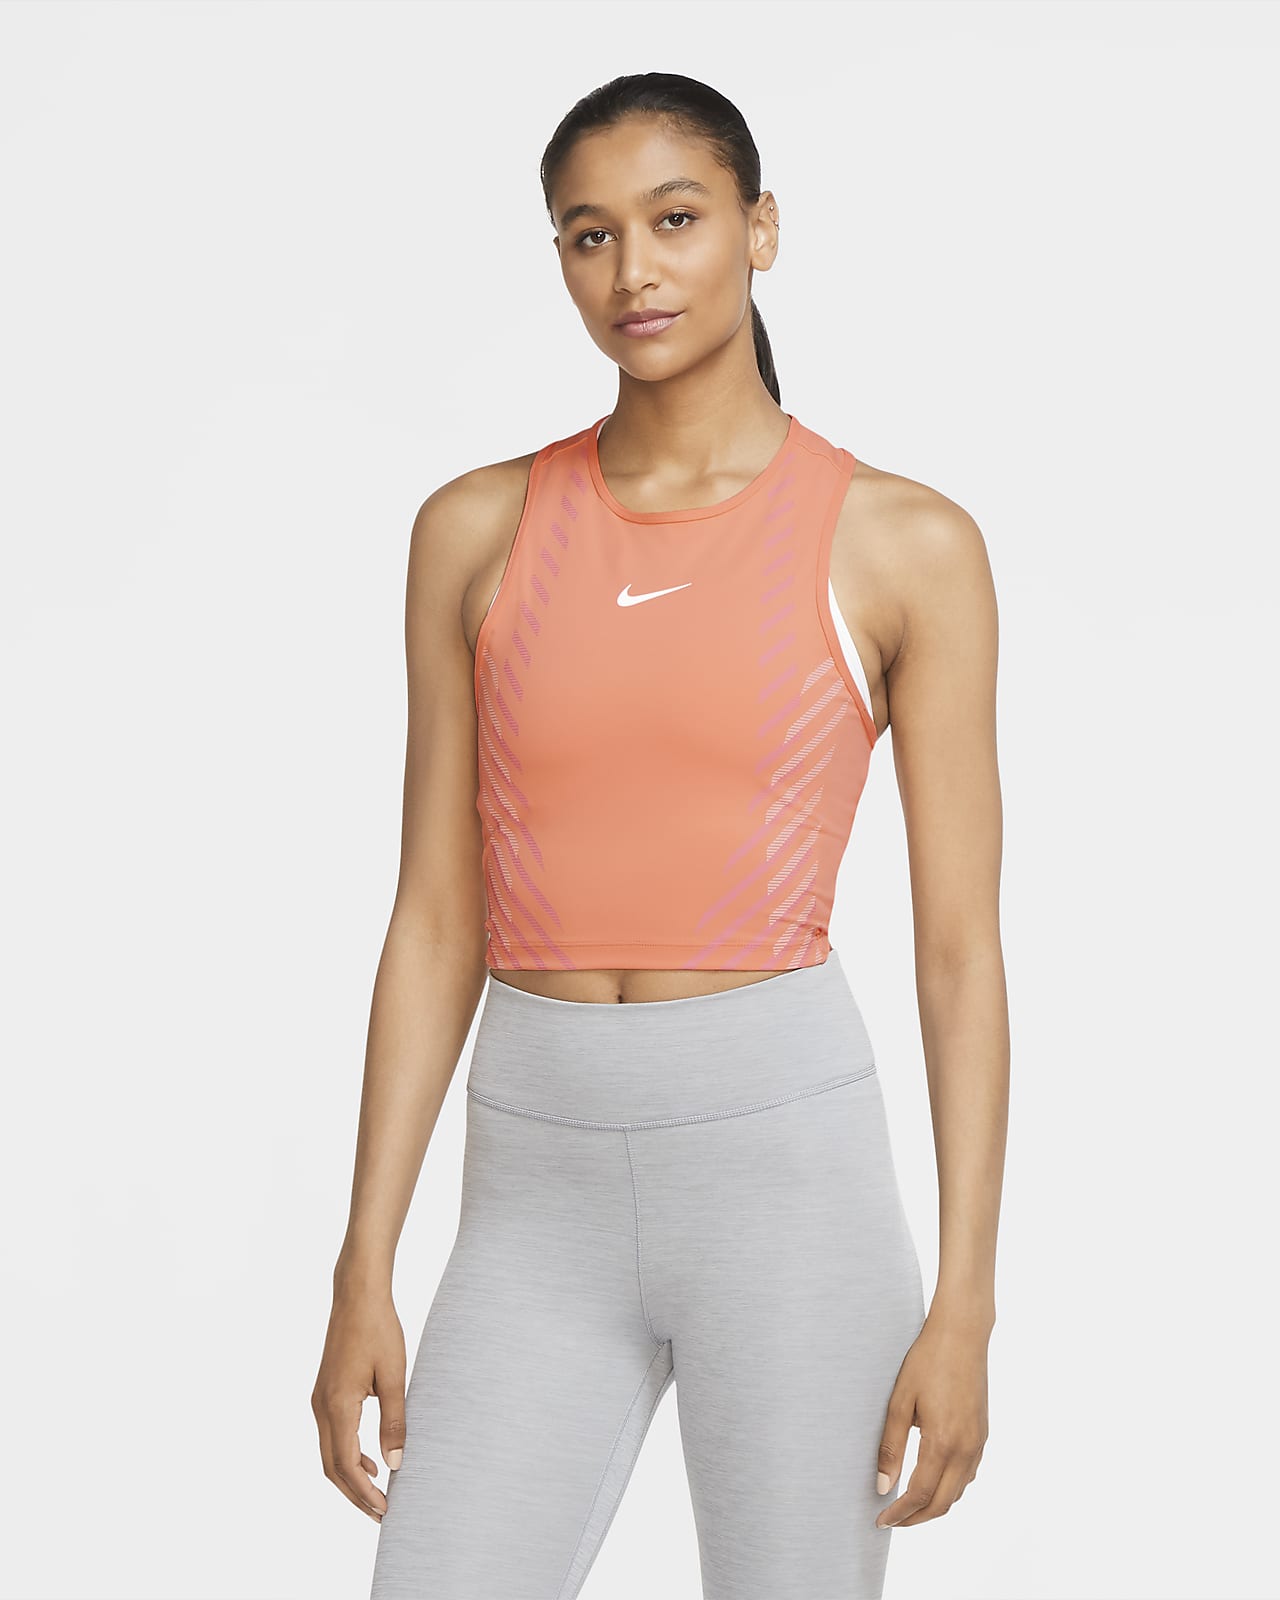 Nike Women's Top. Nike.com